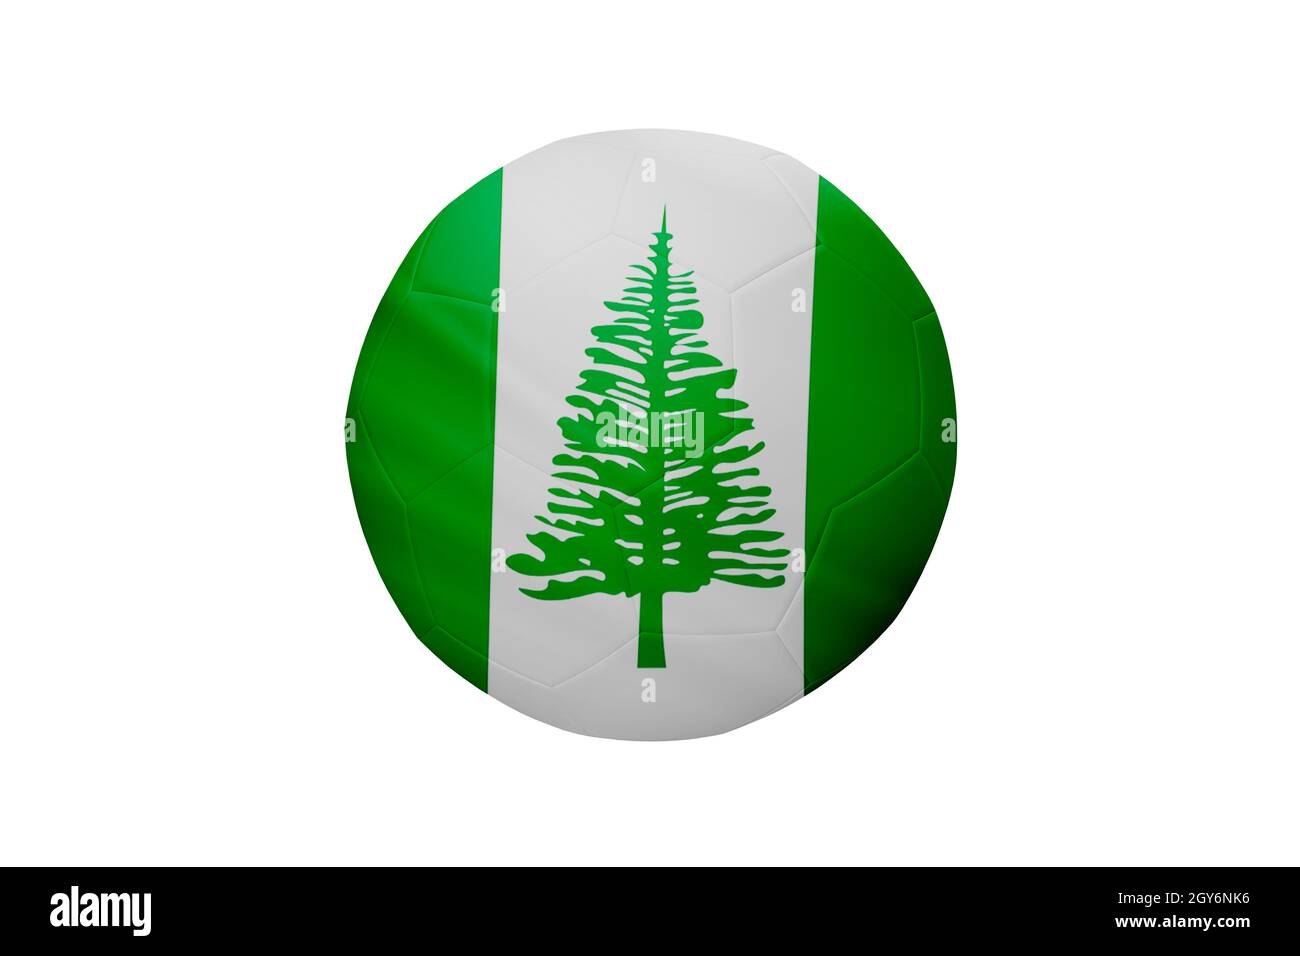 Fußball in den Farben der Flagge von Norfolk Island auf weißem Hintergrund isoliert. In einem konzeptionellen Meisterschaftsbild, das Norfolk Island unterstützt. Stockfoto